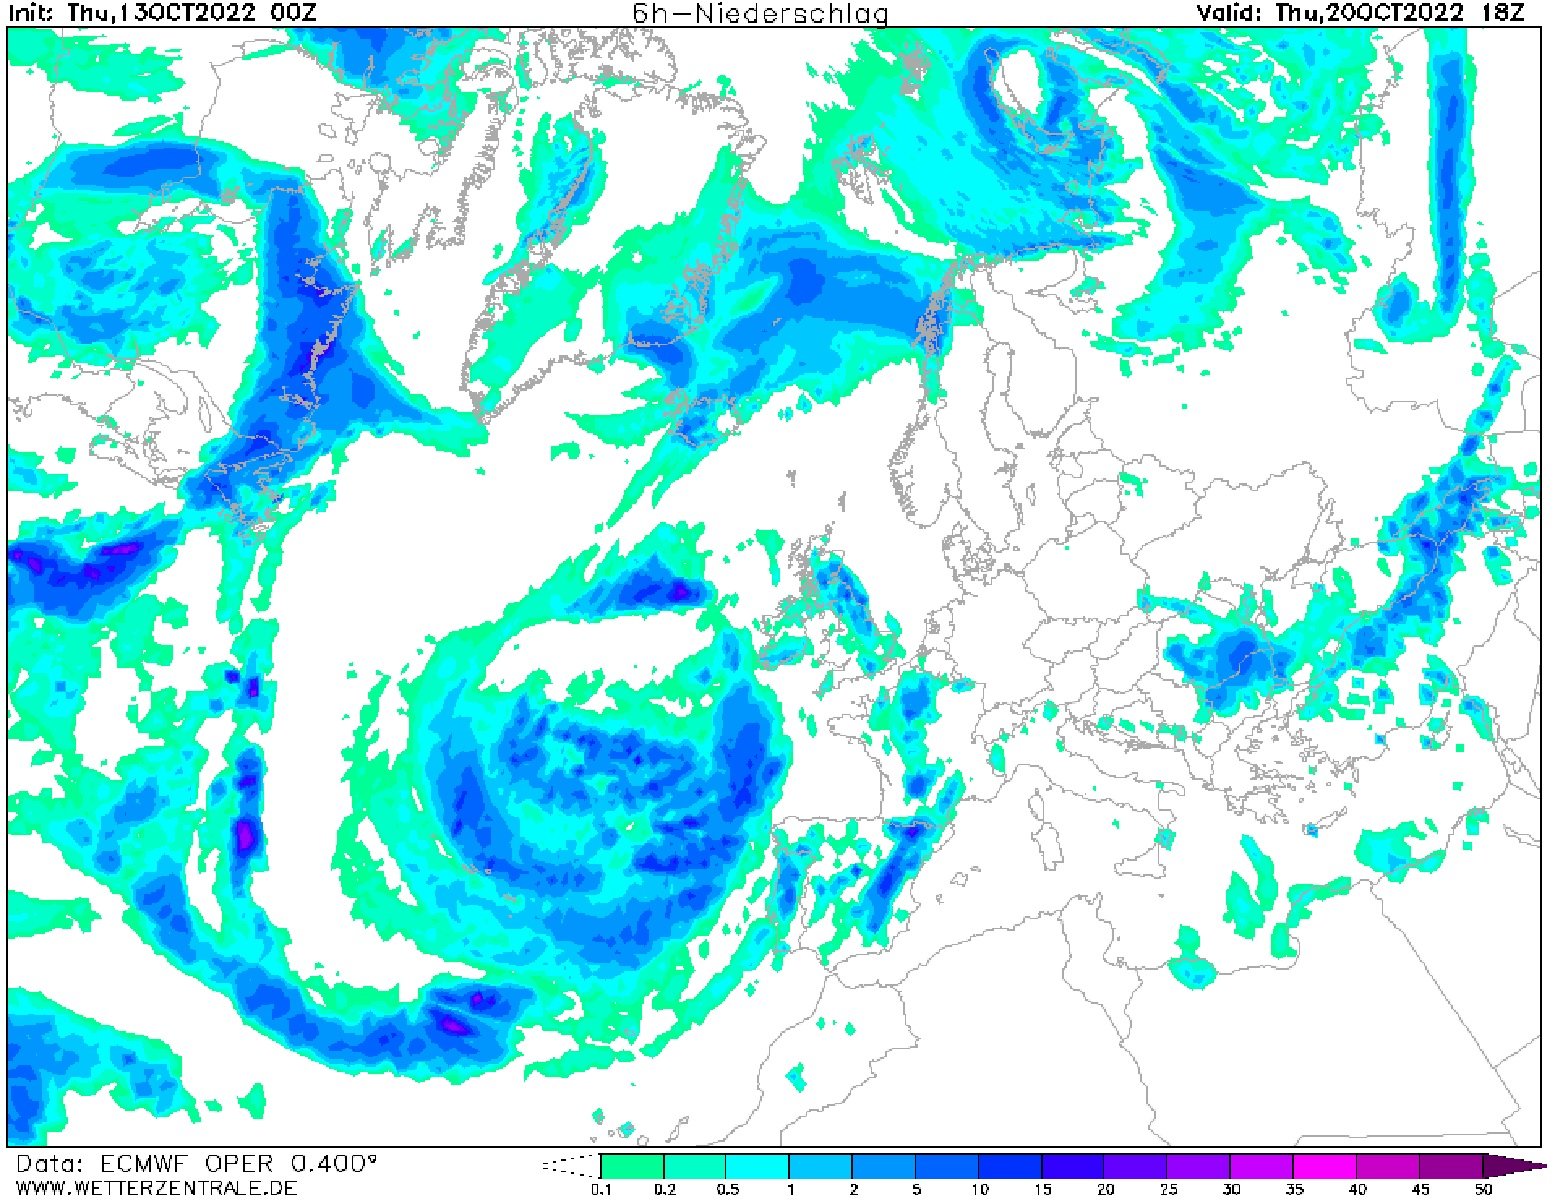 La previsió del temps anuncia pluges dijous, 20 d'octubre ECMWF Wetterzentrale